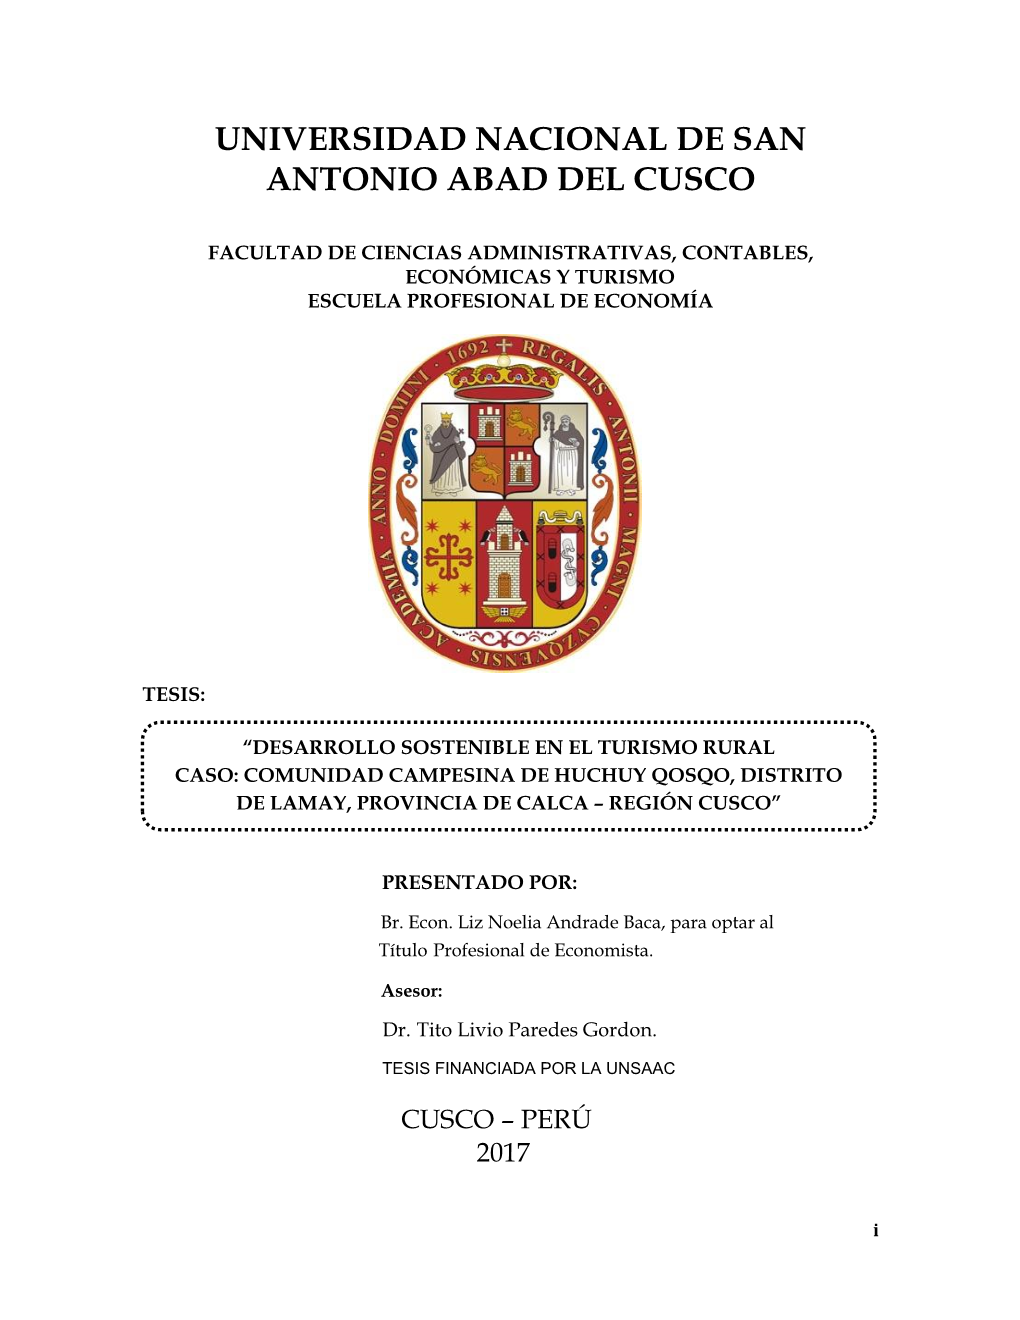 Universidad Nacional De San Antonio Abad Del Cusco